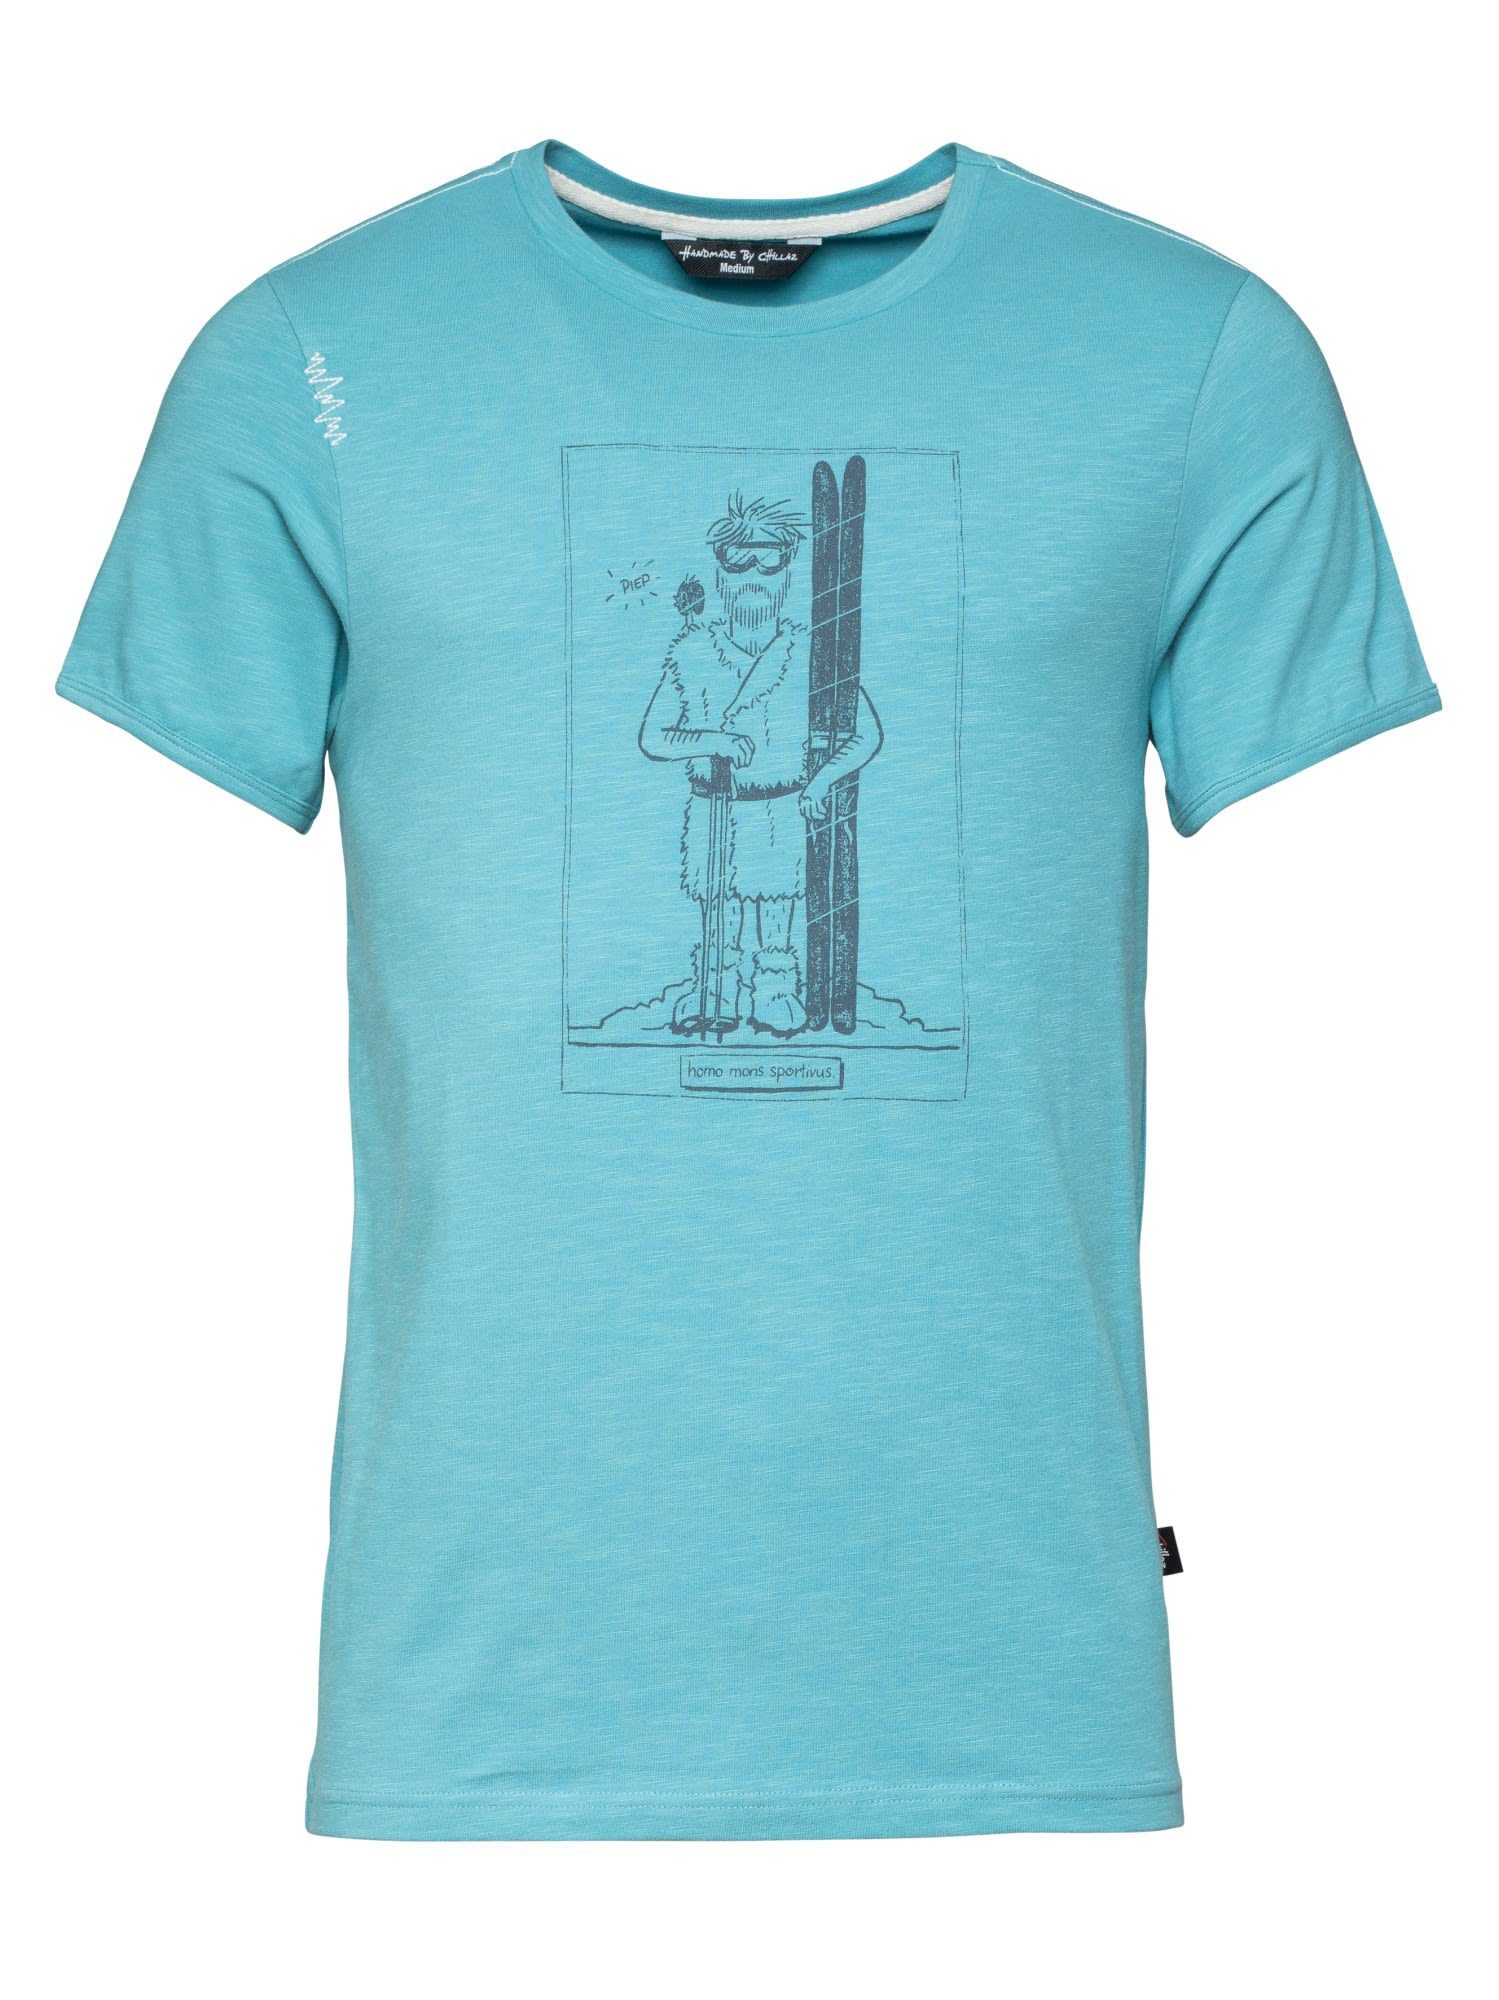 Chillaz T-Shirt Chillaz M Homo Mons Sportivus T-shirt Herren Light Blue